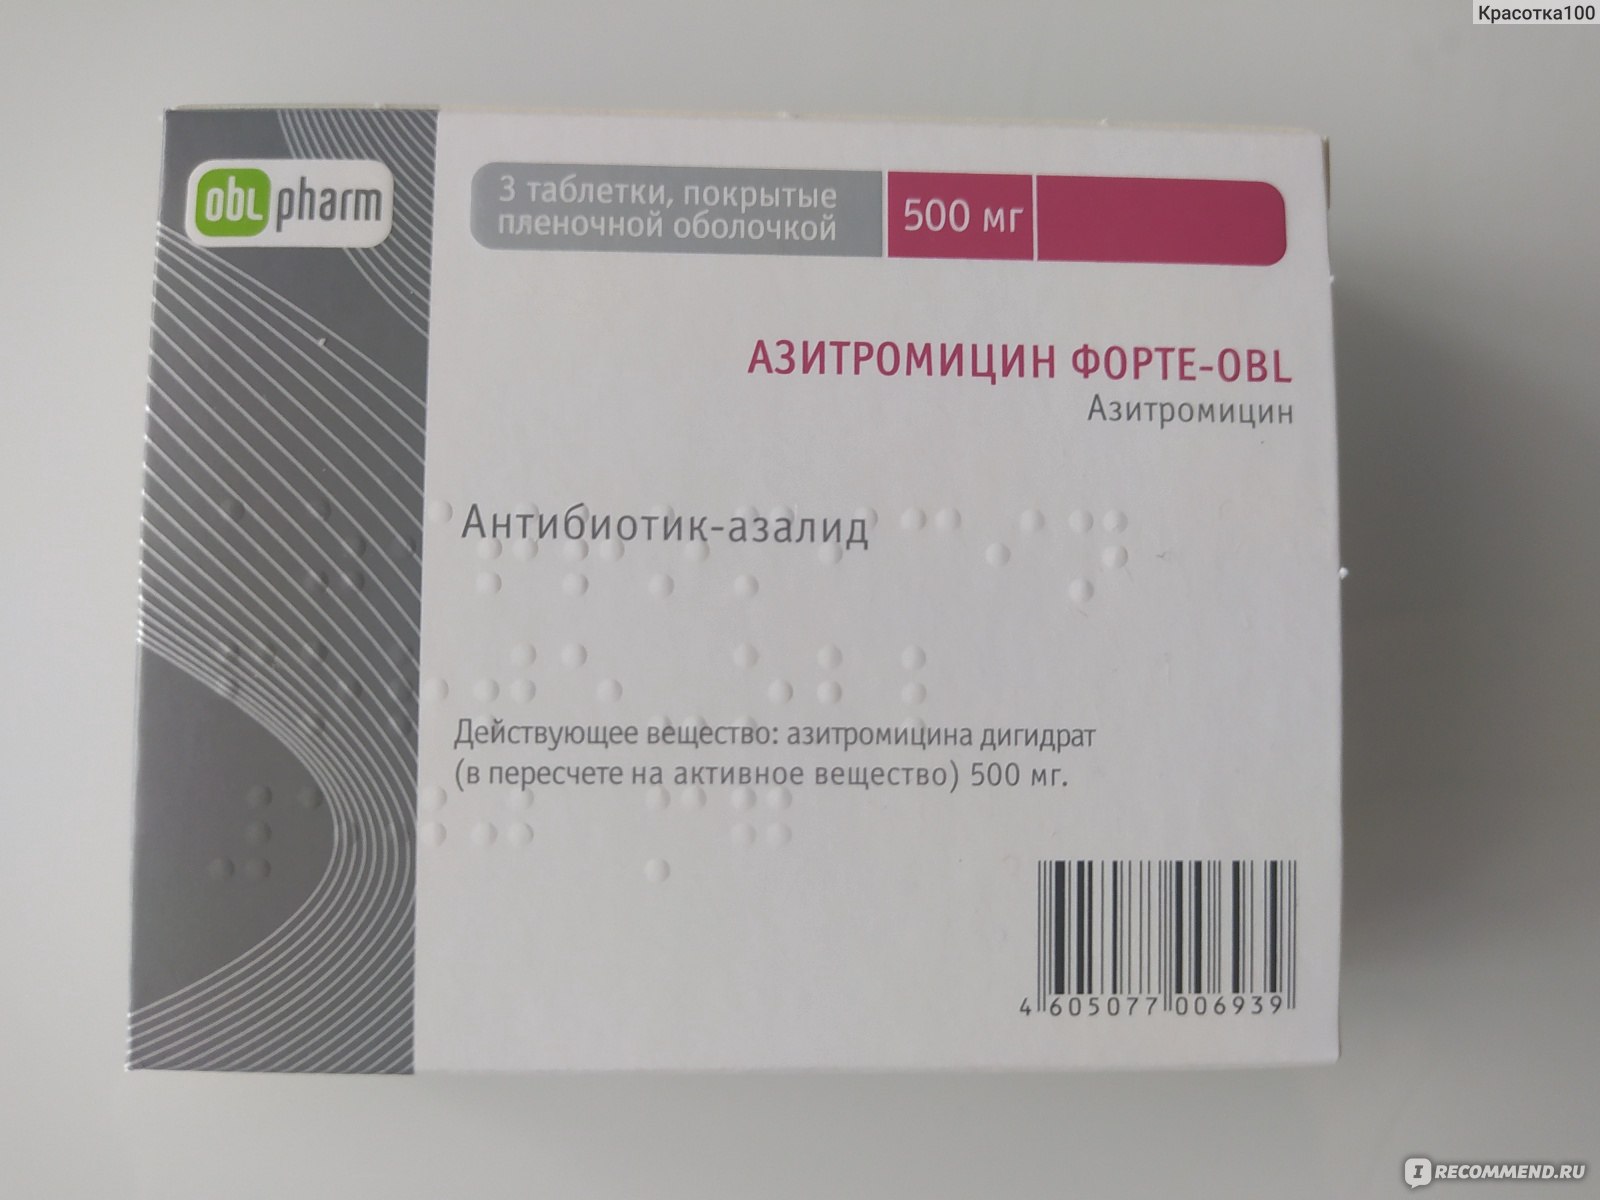 Антибиотик Oblpharm Азитромицин Форте-OBL - «Антибиотик, который .